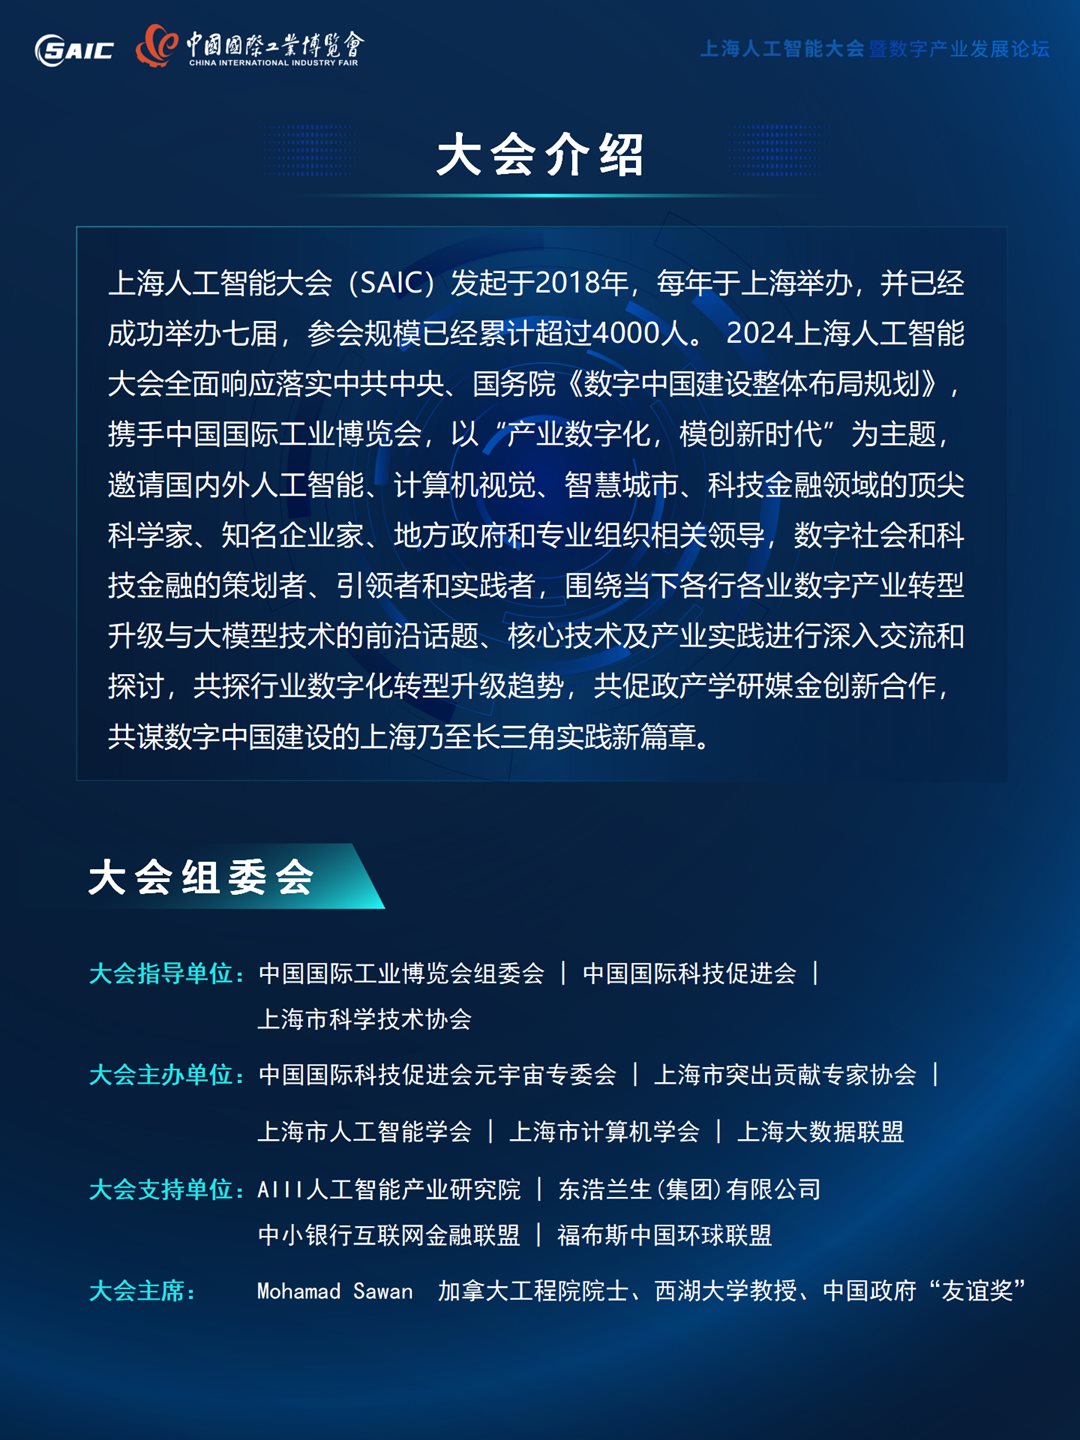 8th上海AI大会 大会合作方案 0517（对外）_02.png